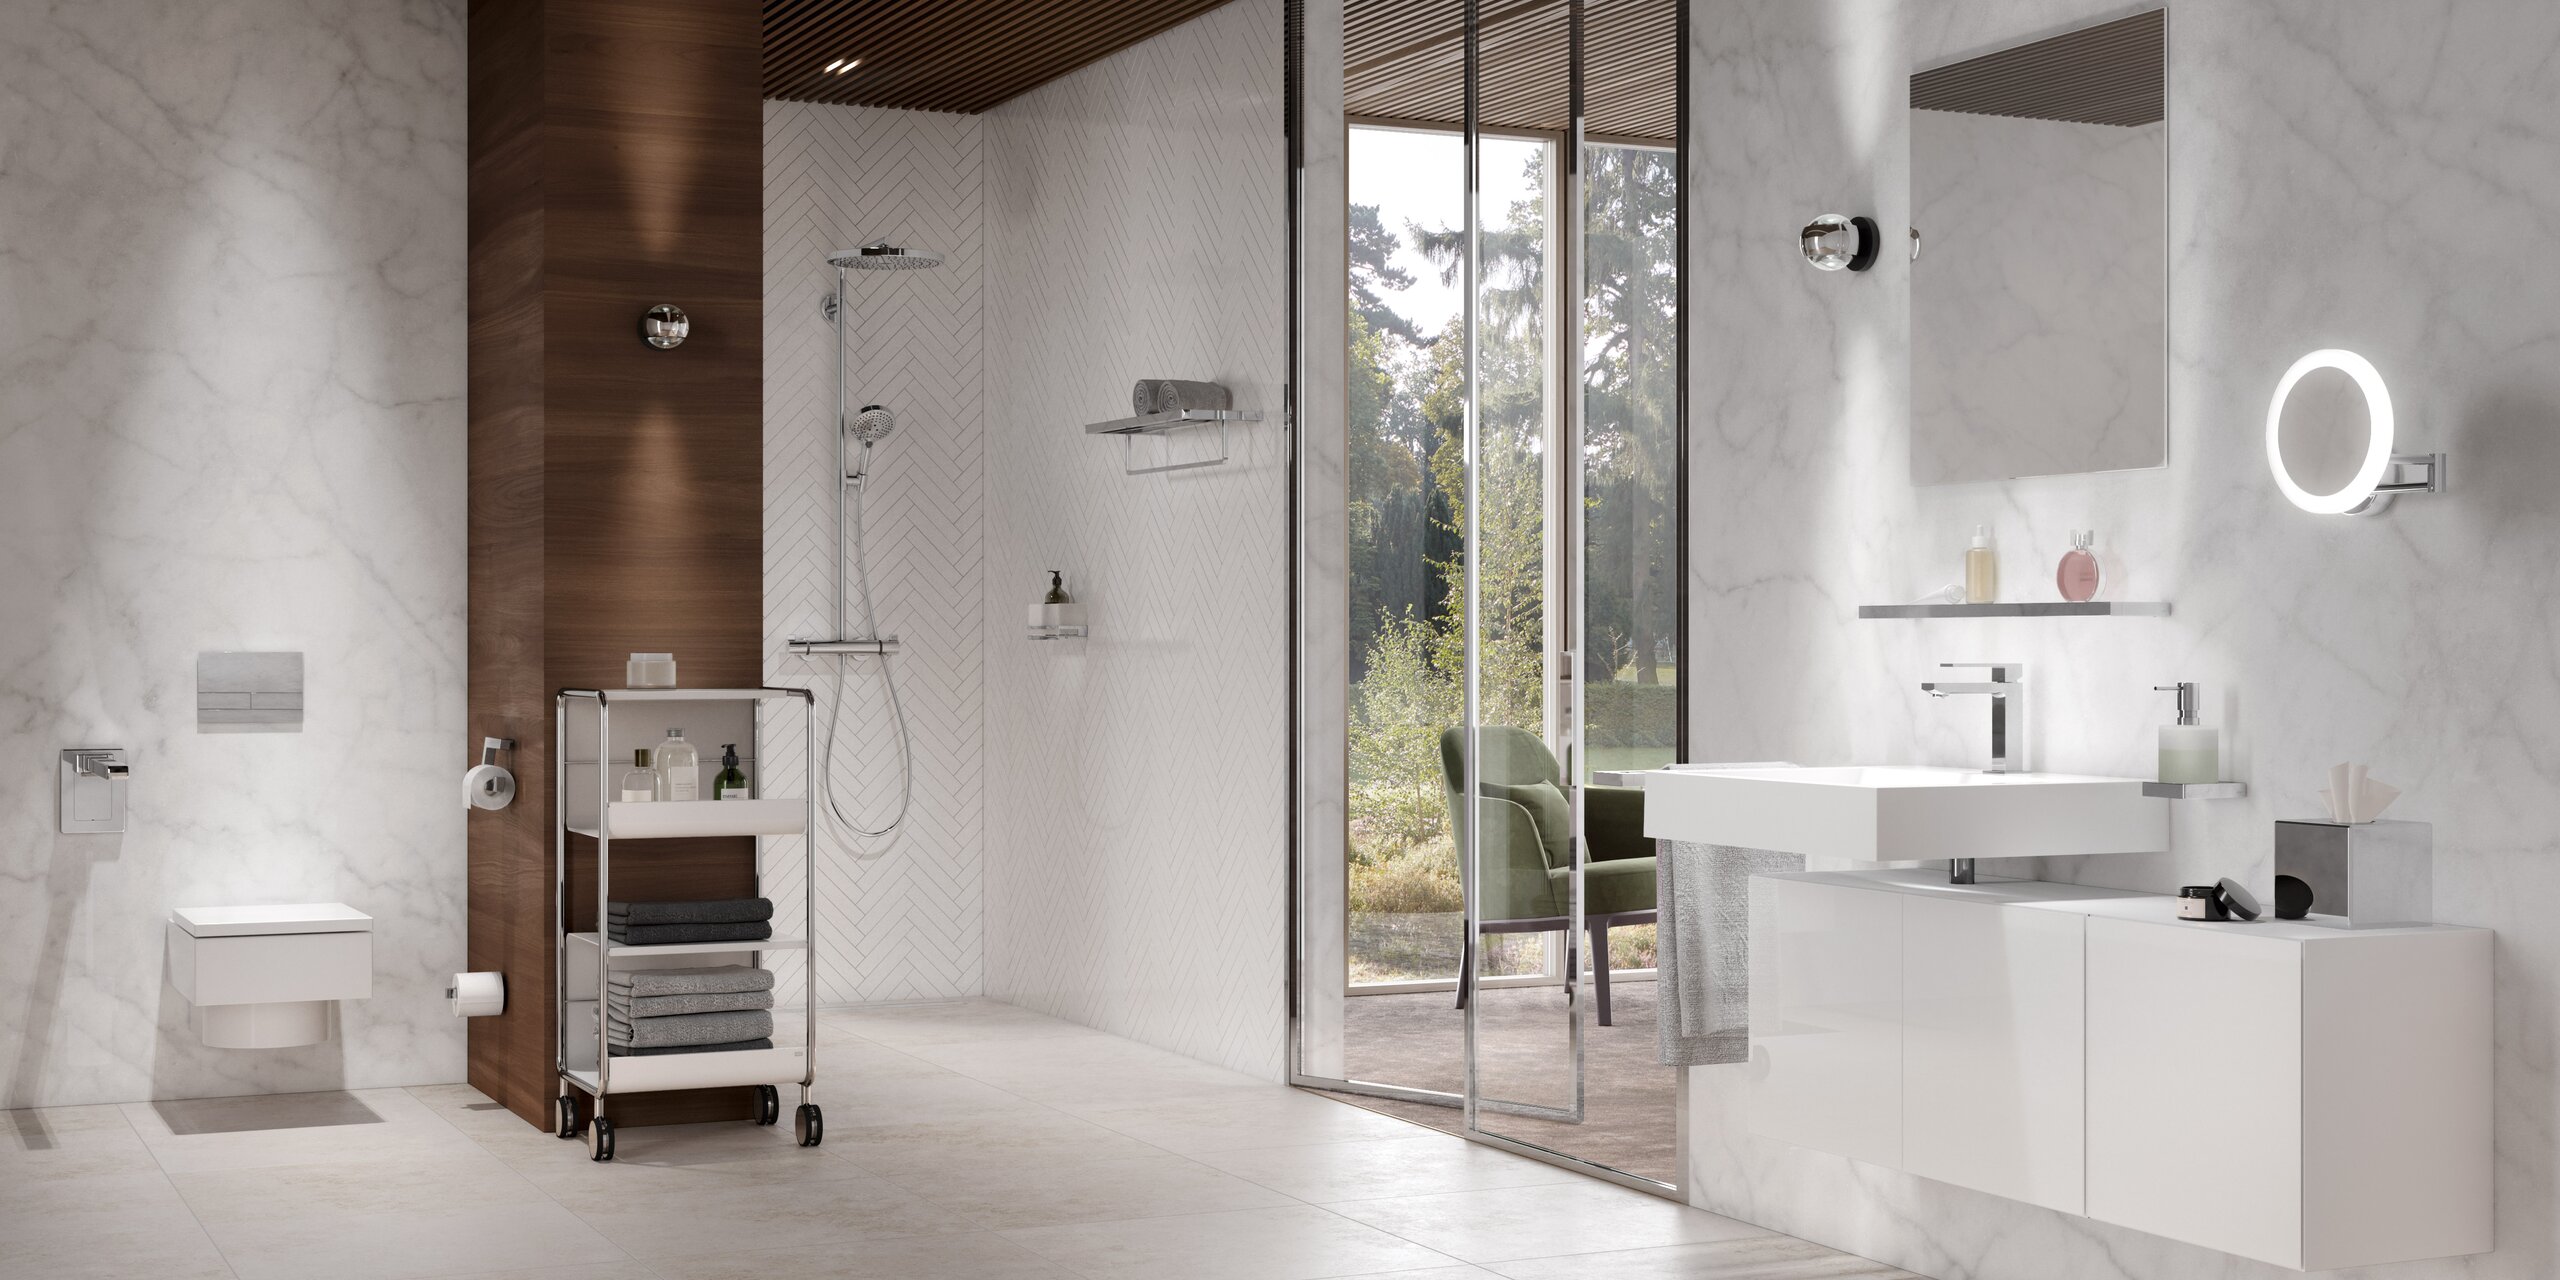 Innenliegendes Bad mit Glastüren und Sanitärausstattung der Serie 100 in chrom